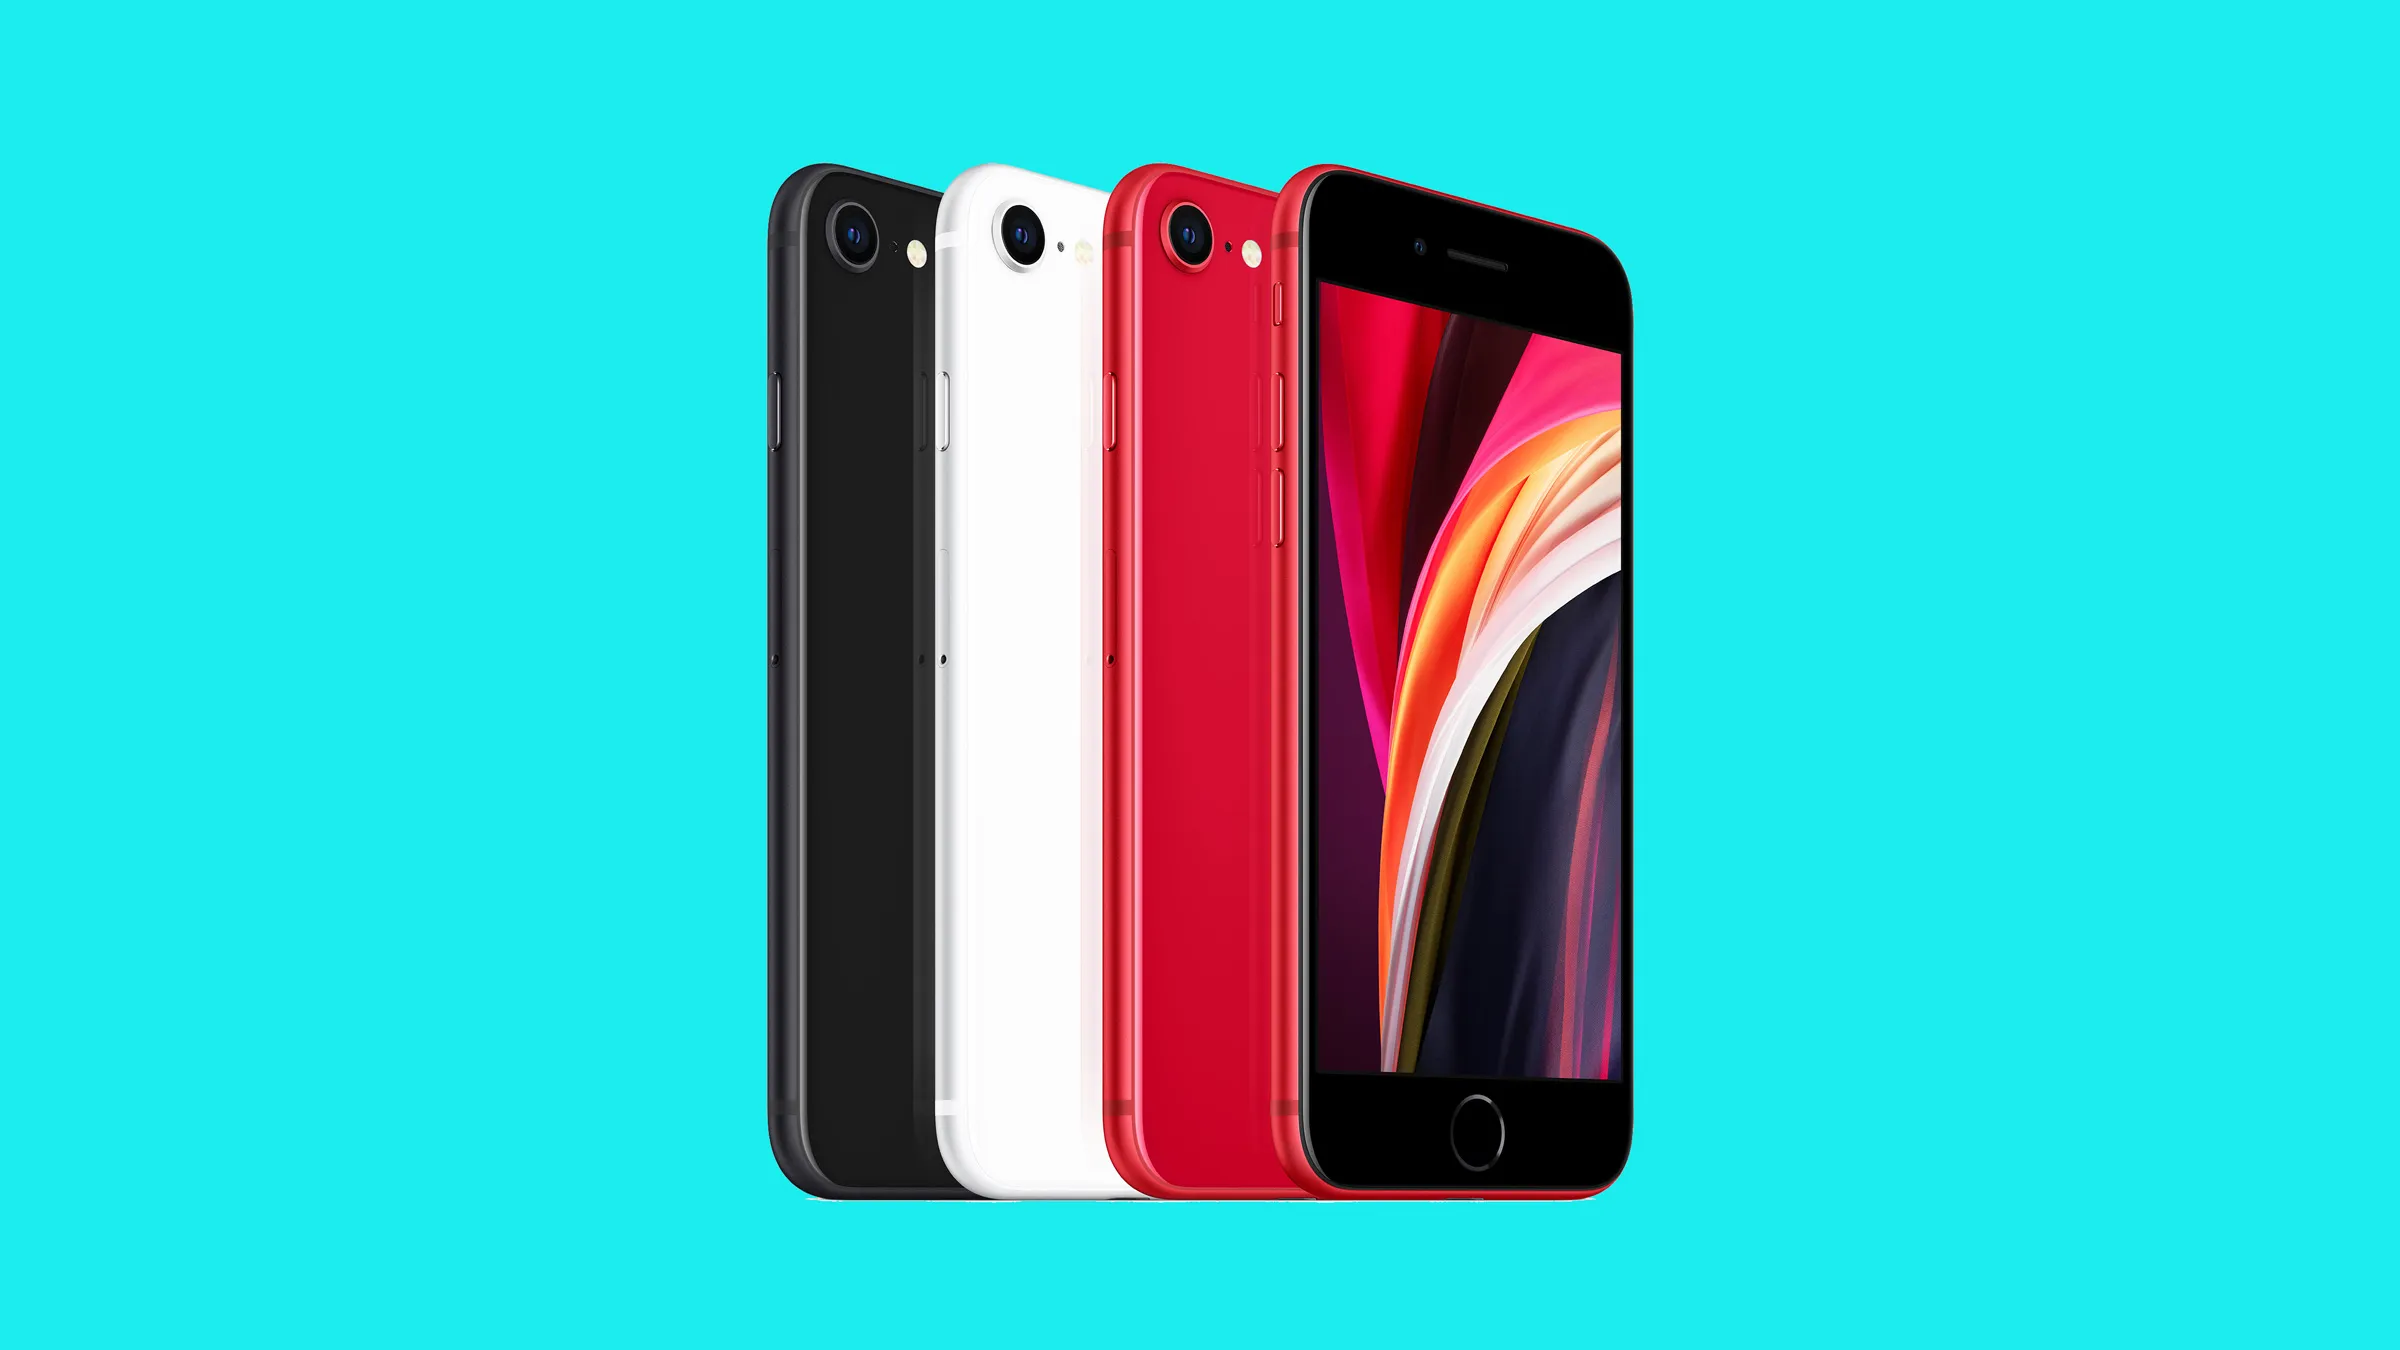 Apple iPhone SE 2 existuje v několika barevných variantách a využívá osvědčené tělo, kterou si tato produktová řada vypůjčila od iPhonu 8.